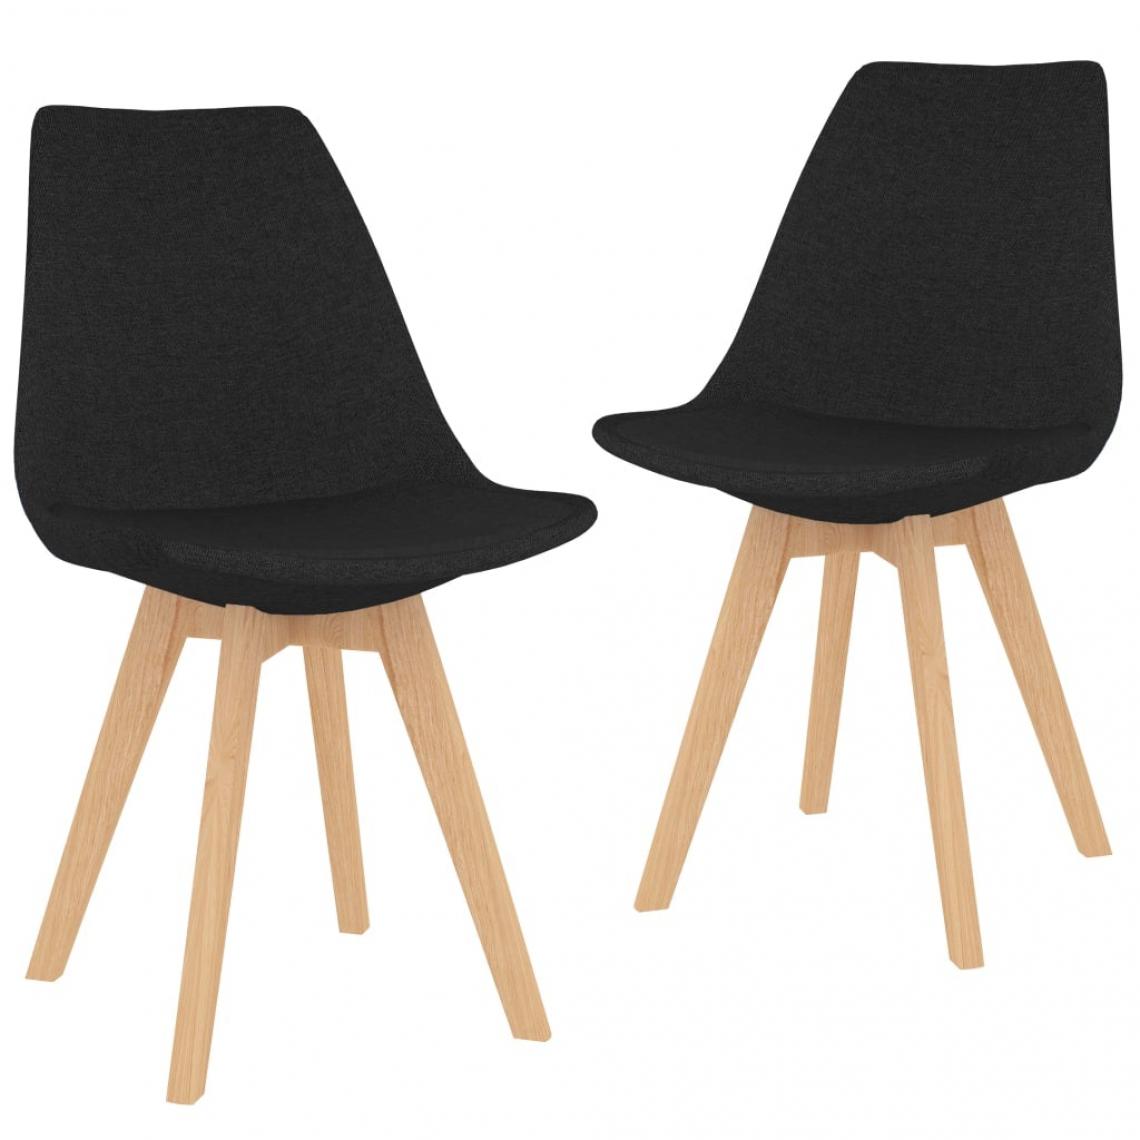 Decoshop26 - Lot de 2 chaises de salle à manger cuisine design moderne tissu noir CDS020879 - Chaises